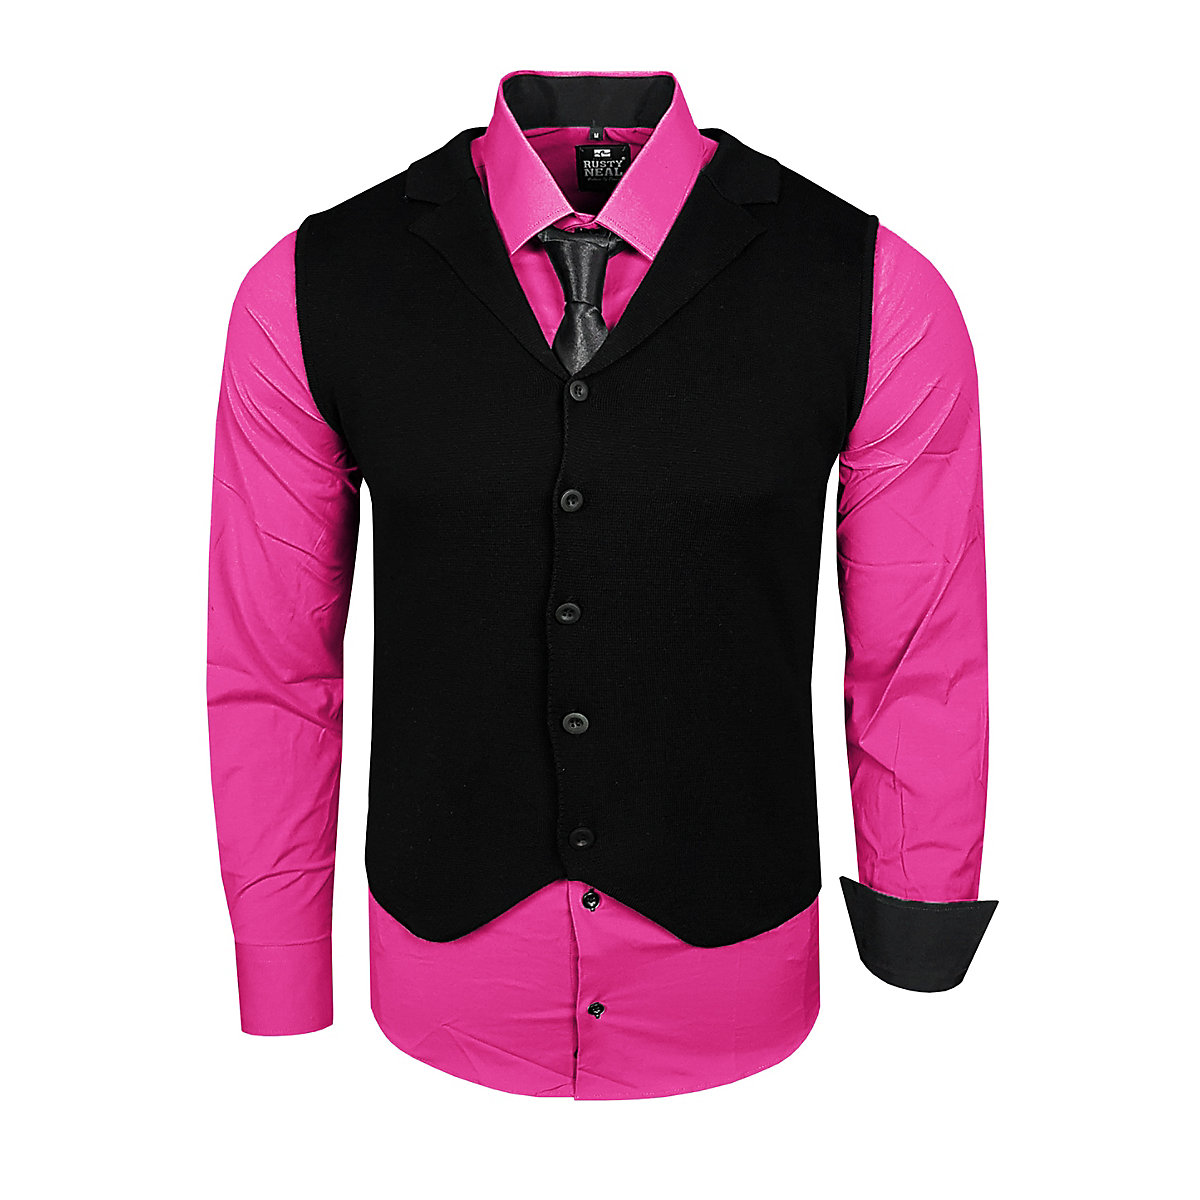 RUSTY NEAL Hemden-Set pink